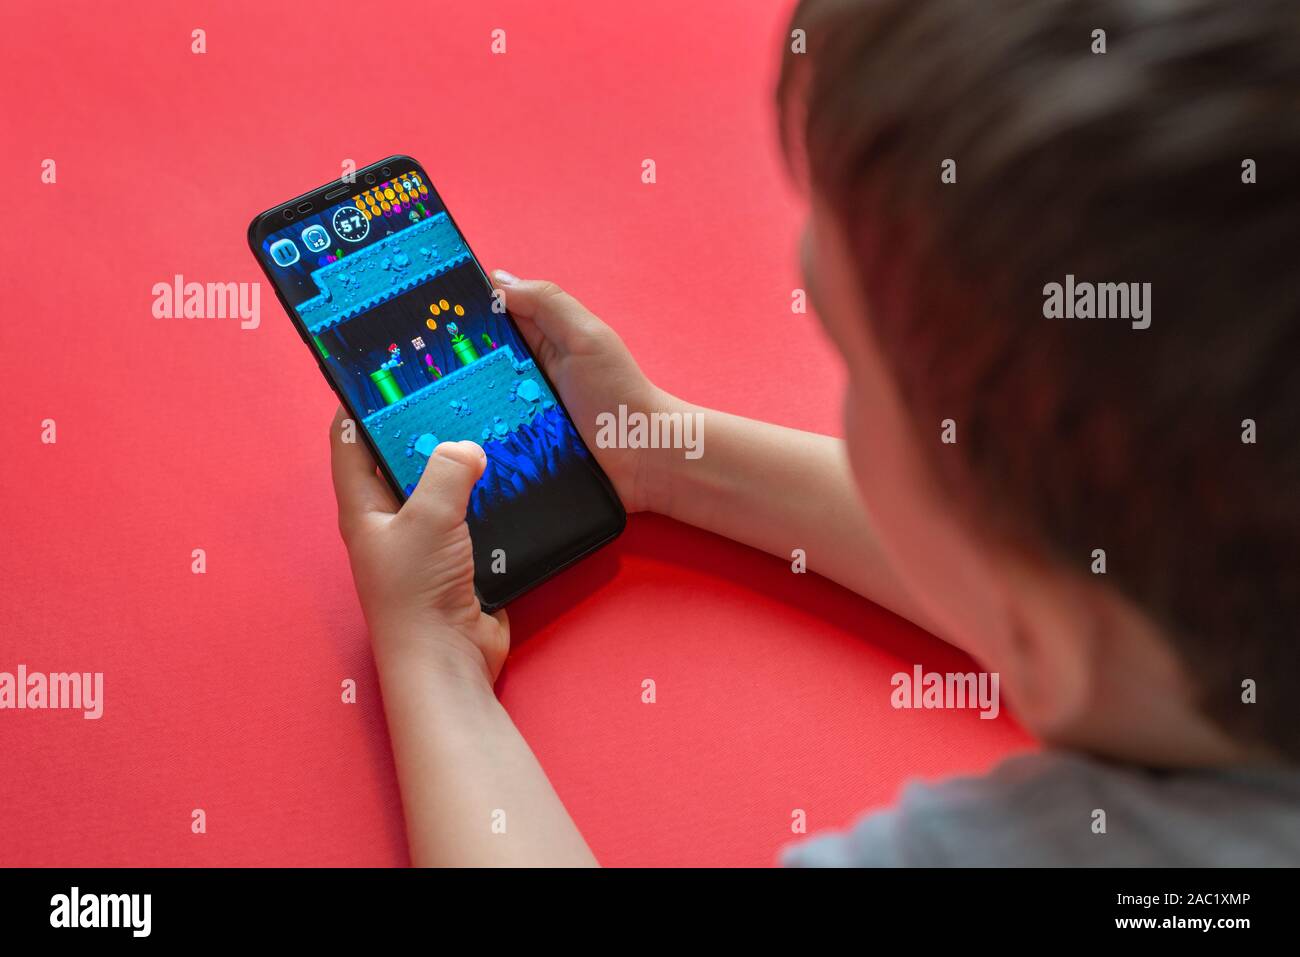 Sarajevo, Bosnien und Herzegowina - November 30, 2019: Junge spielt Super Mario laufen Mobile Game auf dem Samsung Galaxy S9 plus Telefon close-up Stockfoto